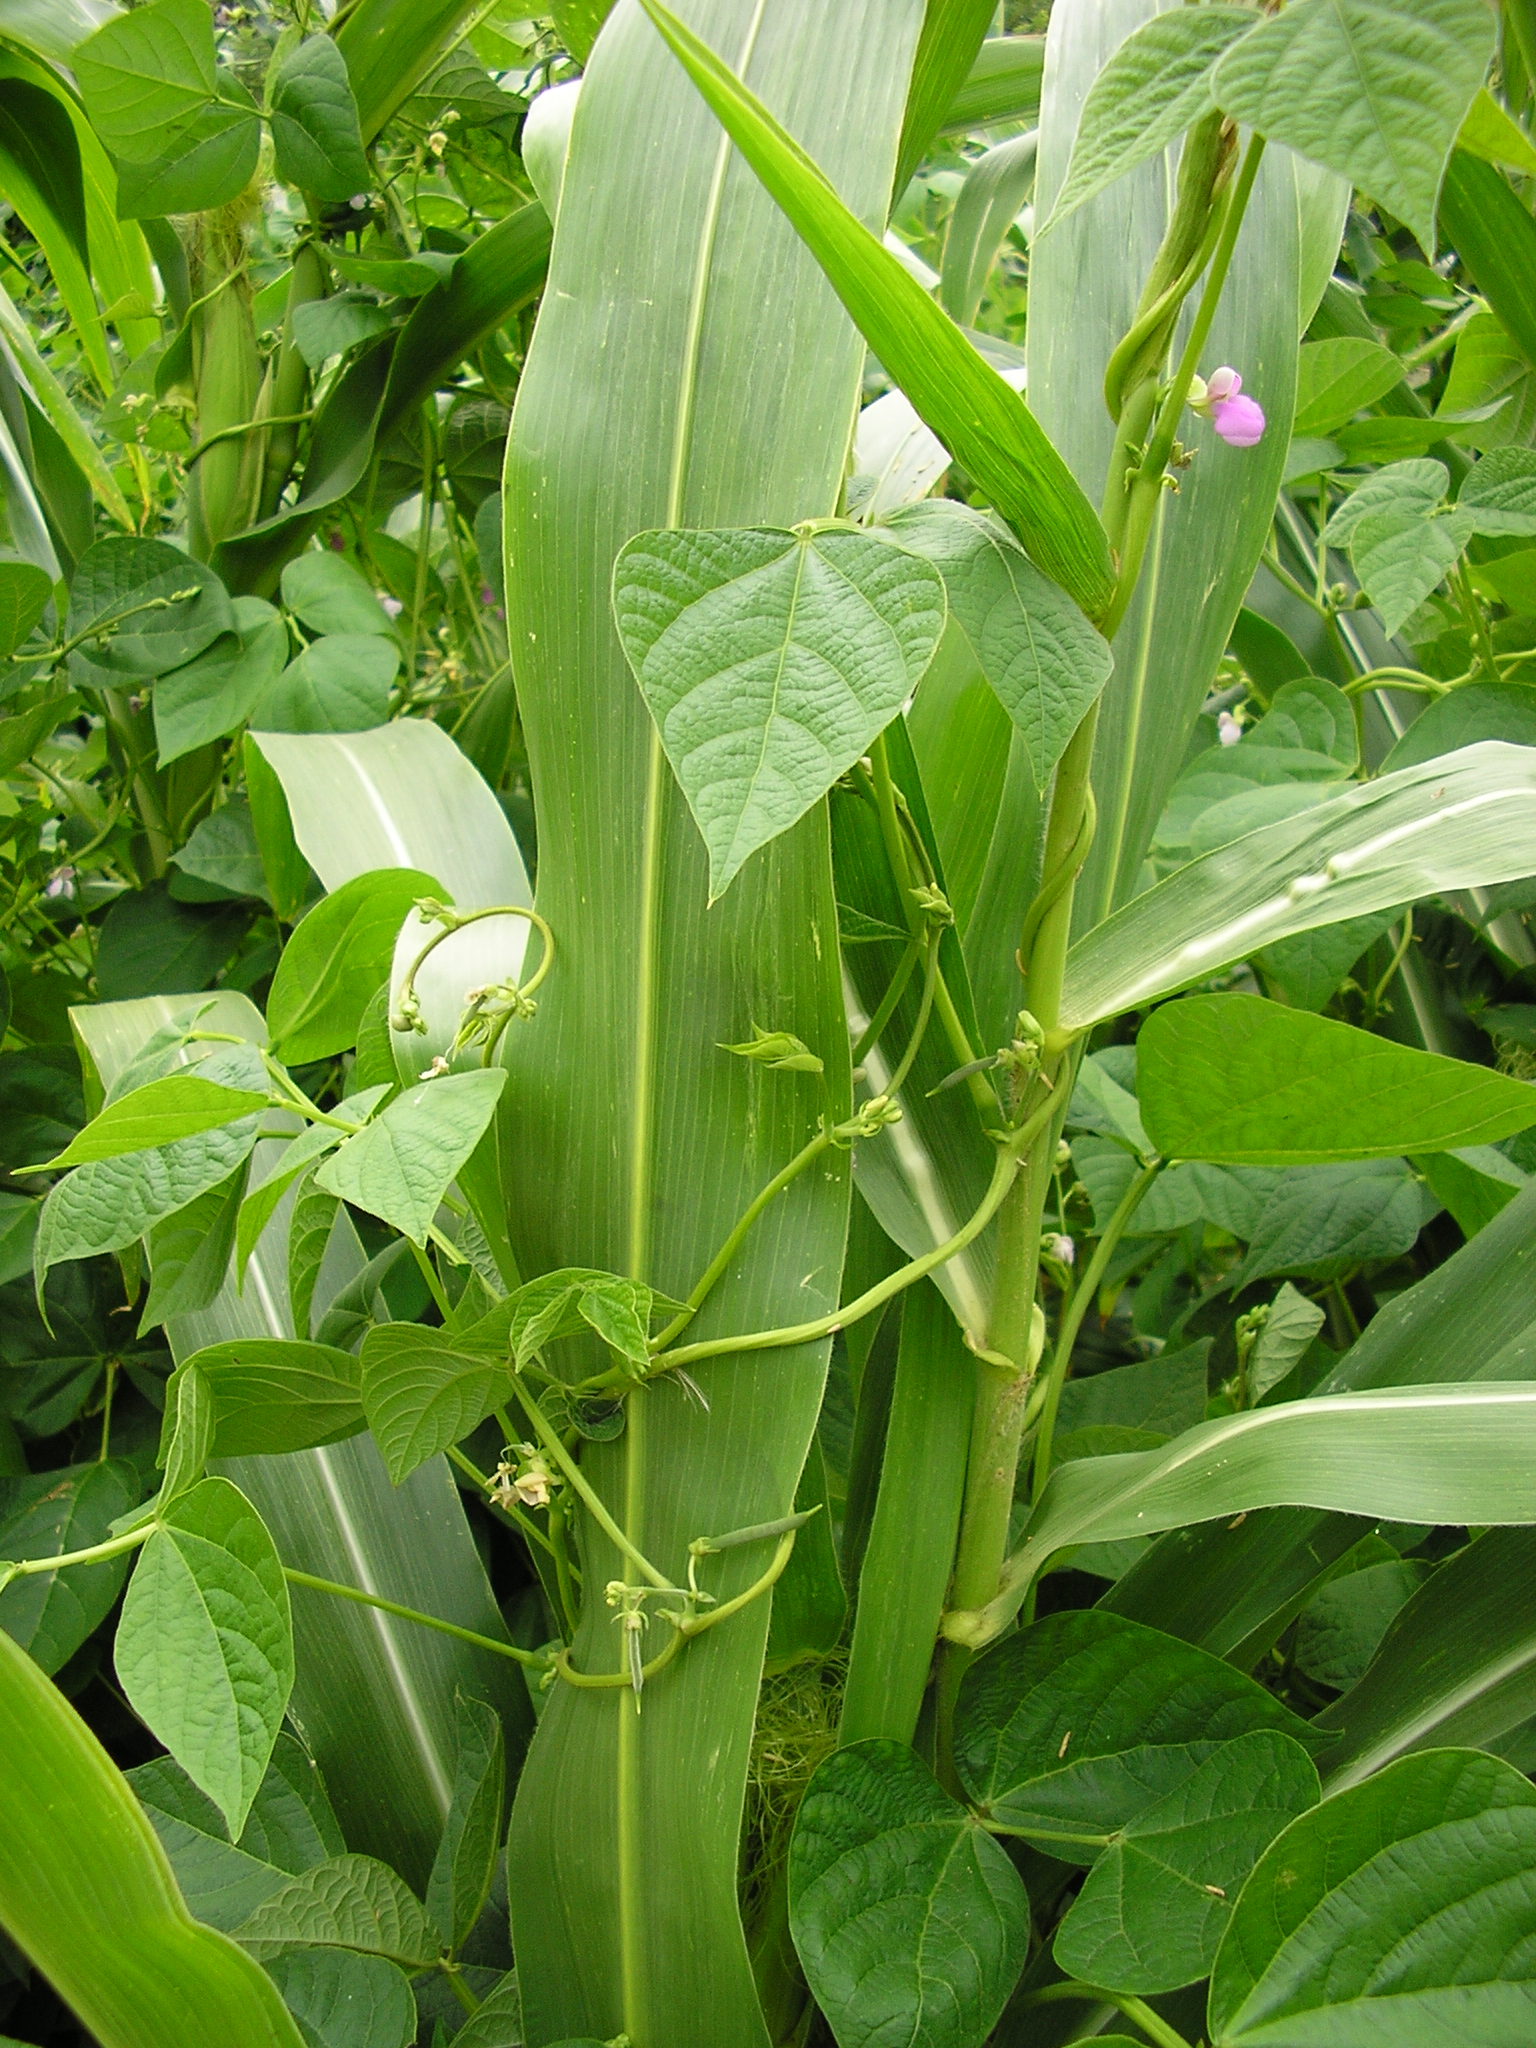 Cultivo mixto de maíz y alubia. Luis Manuel Peña